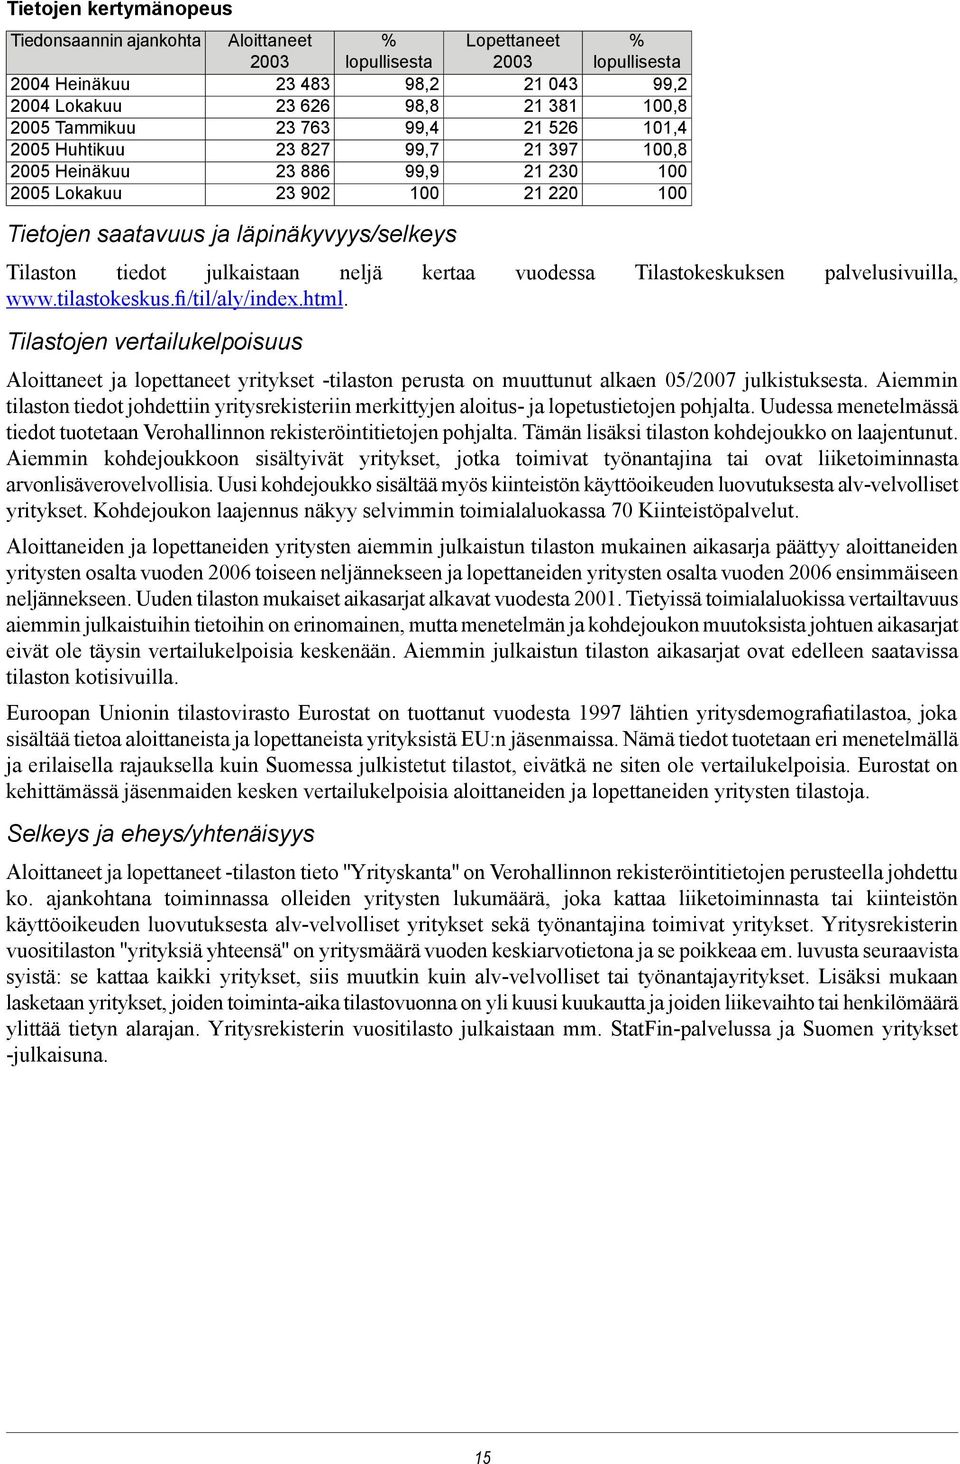 tiedot julkaistaan neljä kertaa vuodessa Tilastokeskuksen palvelusivuilla, www.tilastokeskus.fi/til/aly/index.html.